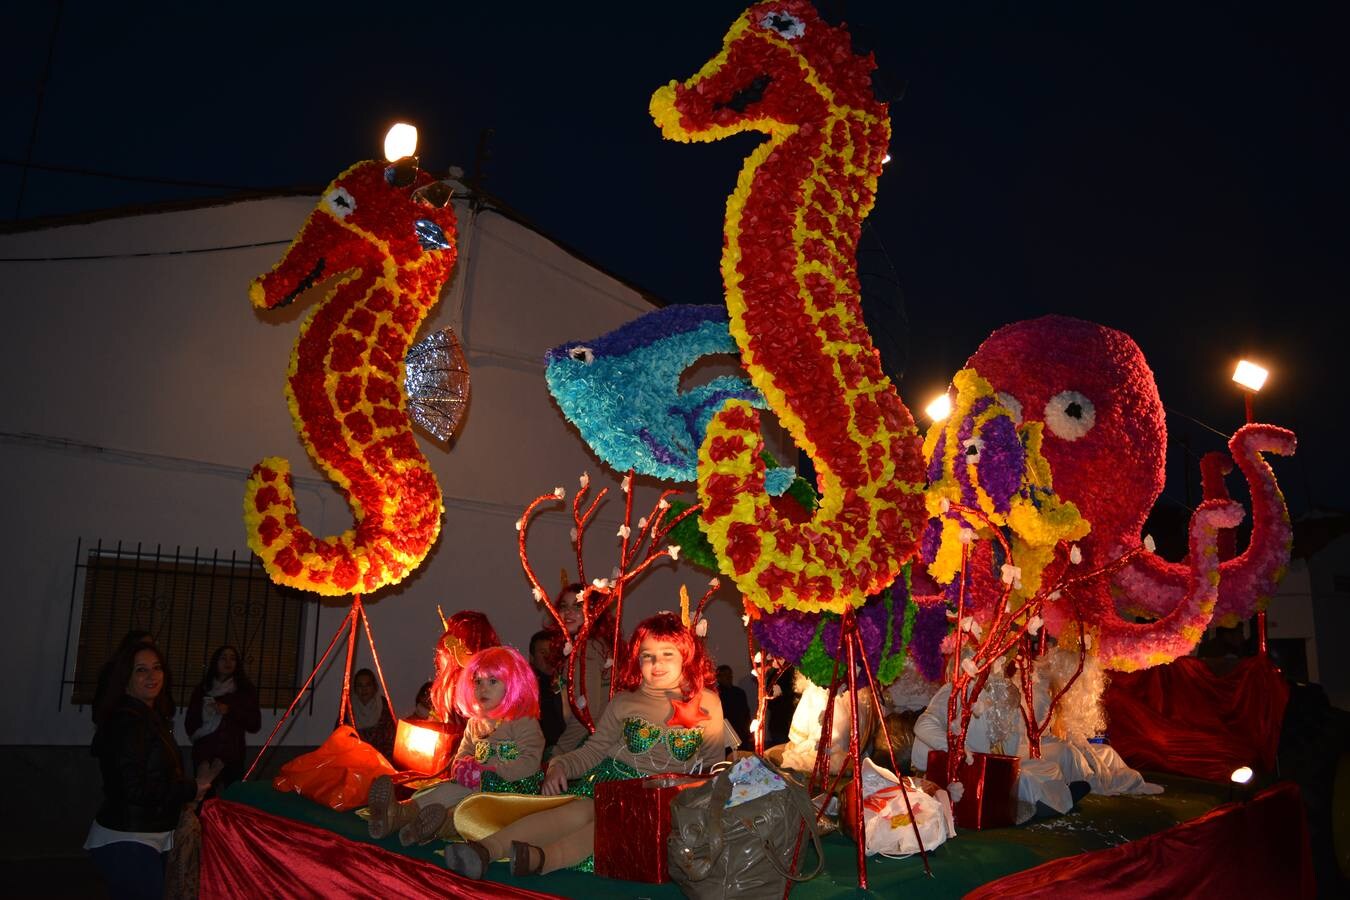 Noche de Reyes en Fregenal 2017